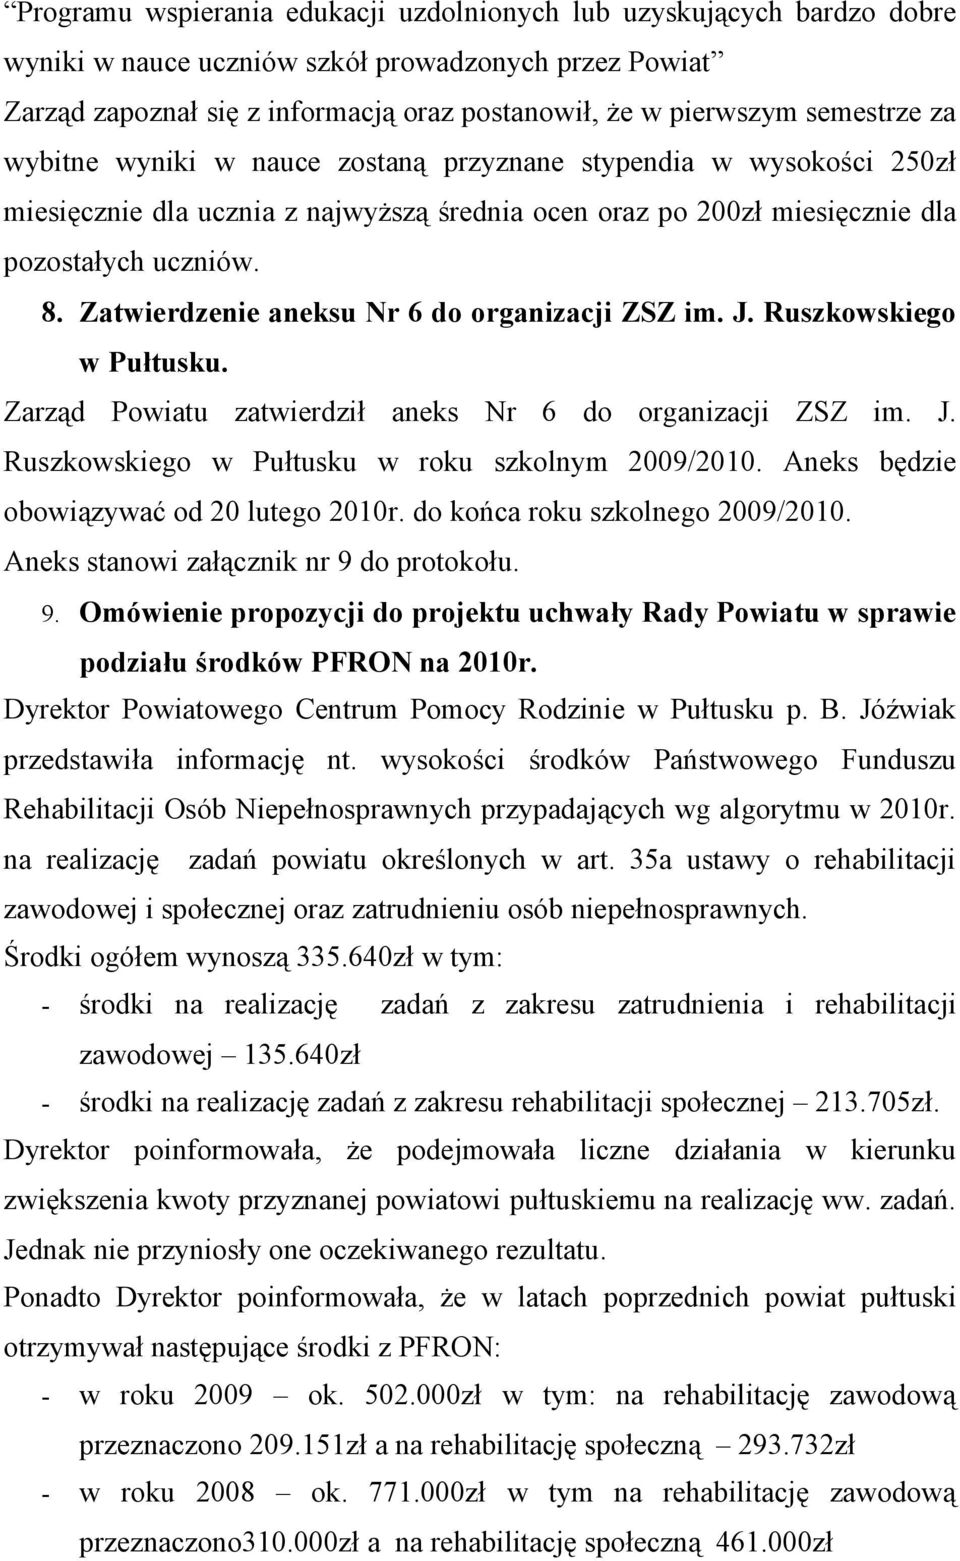 Zatwierdzenie aneksu Nr 6 do organizacji ZSZ im. J. Ruszkowskiego w Pułtusku. Zarząd Powiatu zatwierdził aneks Nr 6 do organizacji ZSZ im. J. Ruszkowskiego w Pułtusku w roku szkolnym 2009/2010.